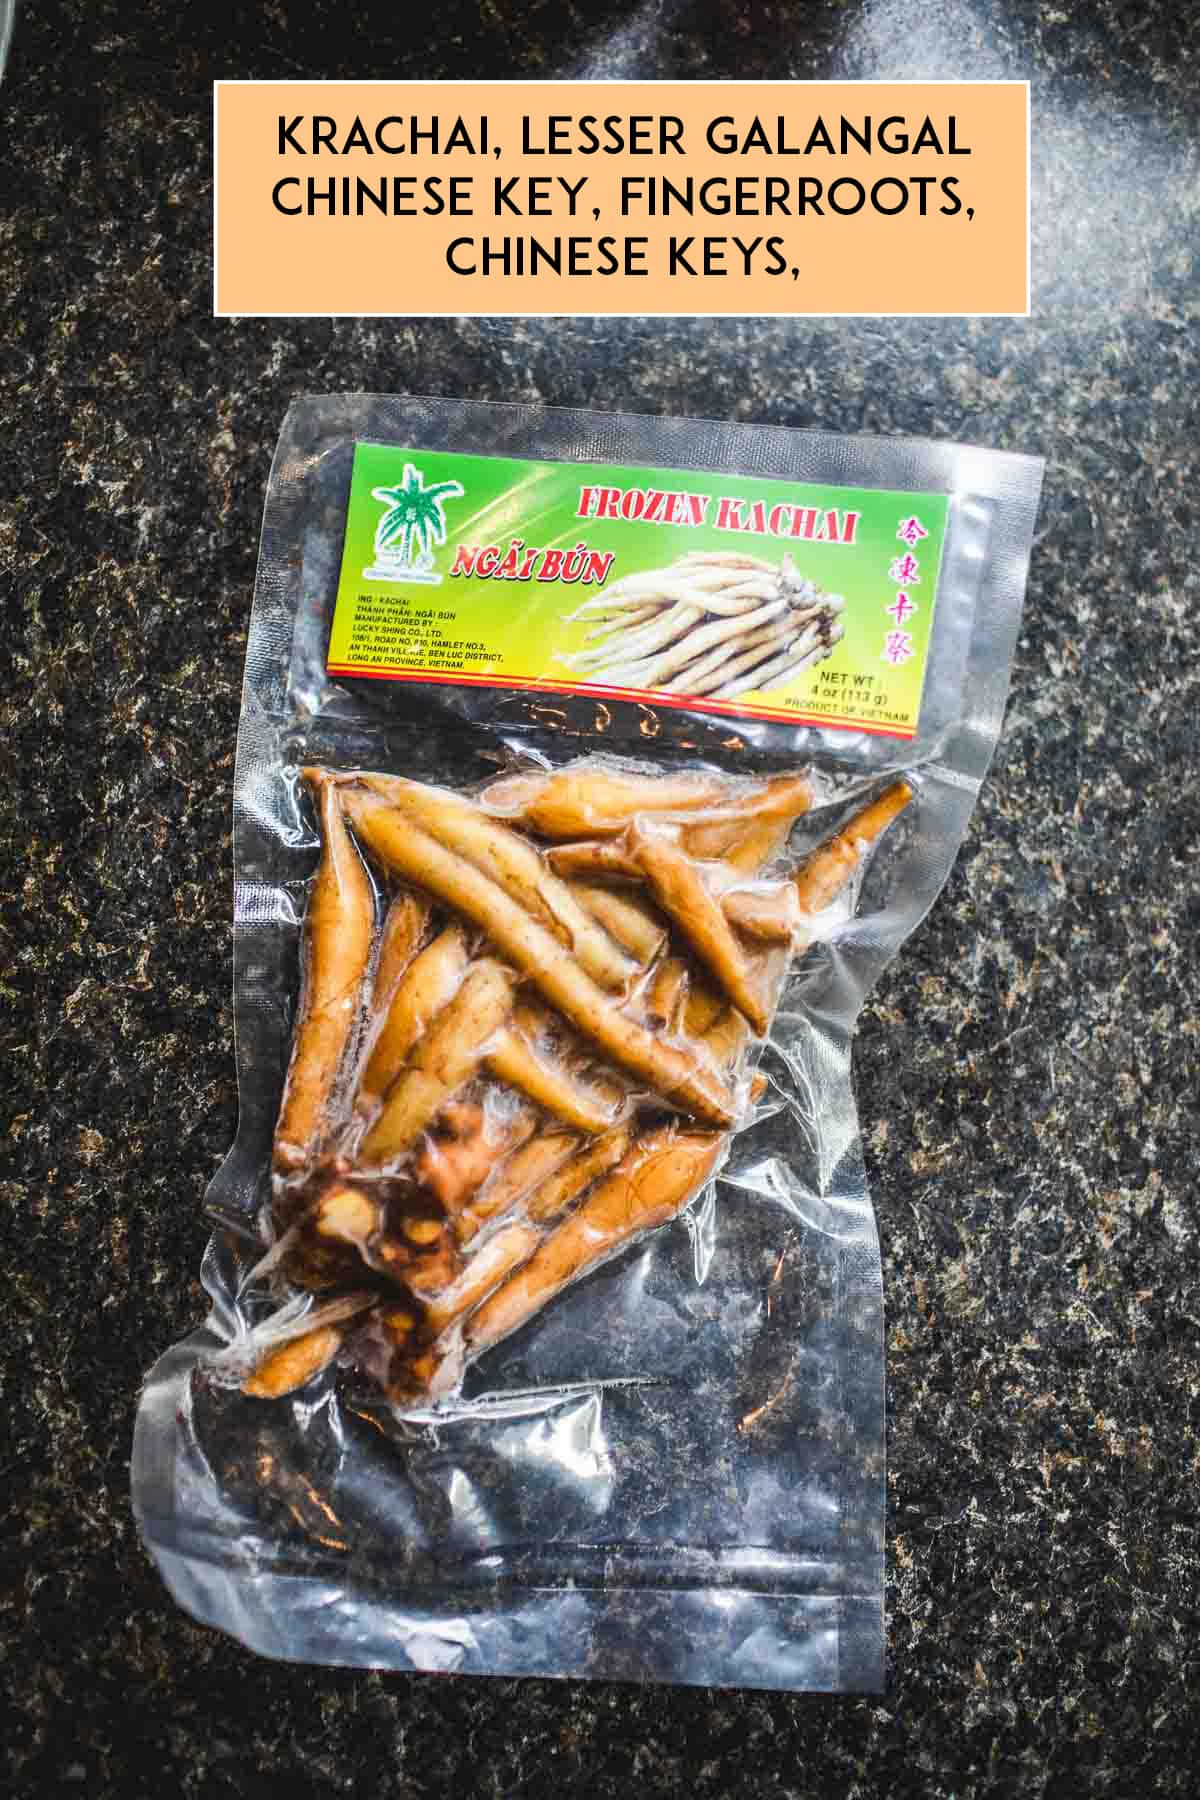 Krachai herb in a bag